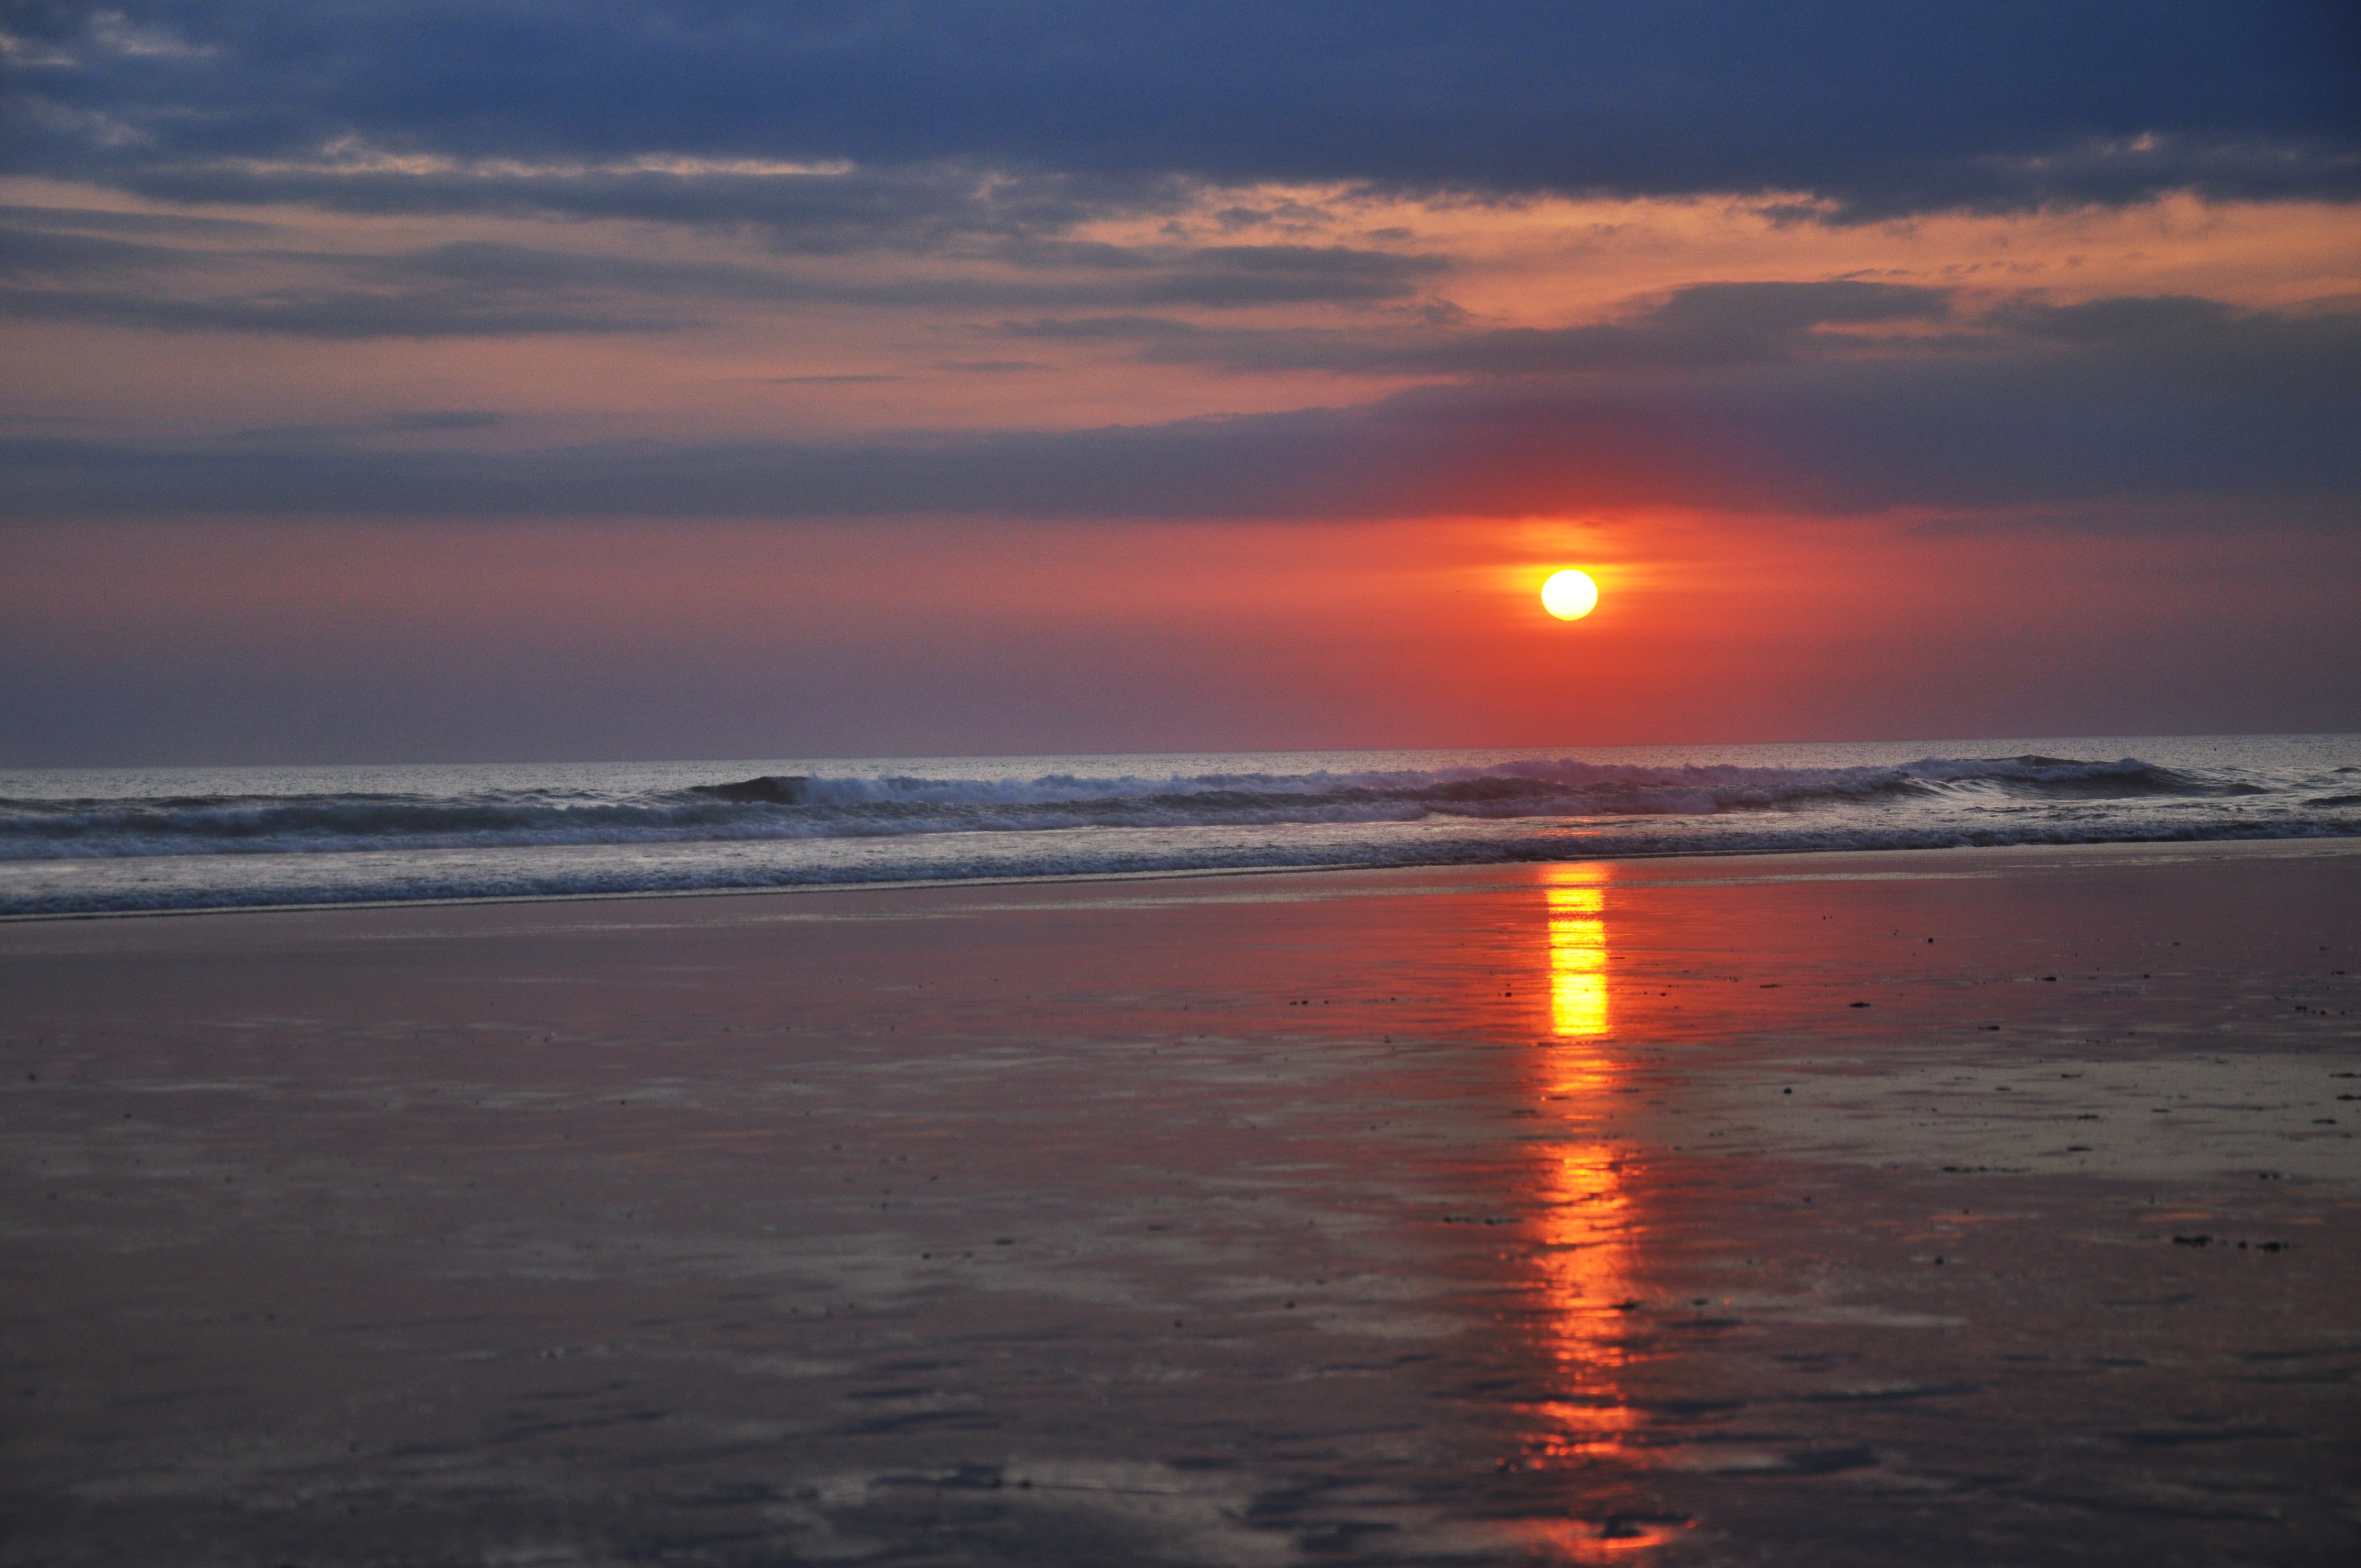 红日在海平线上清晰可见